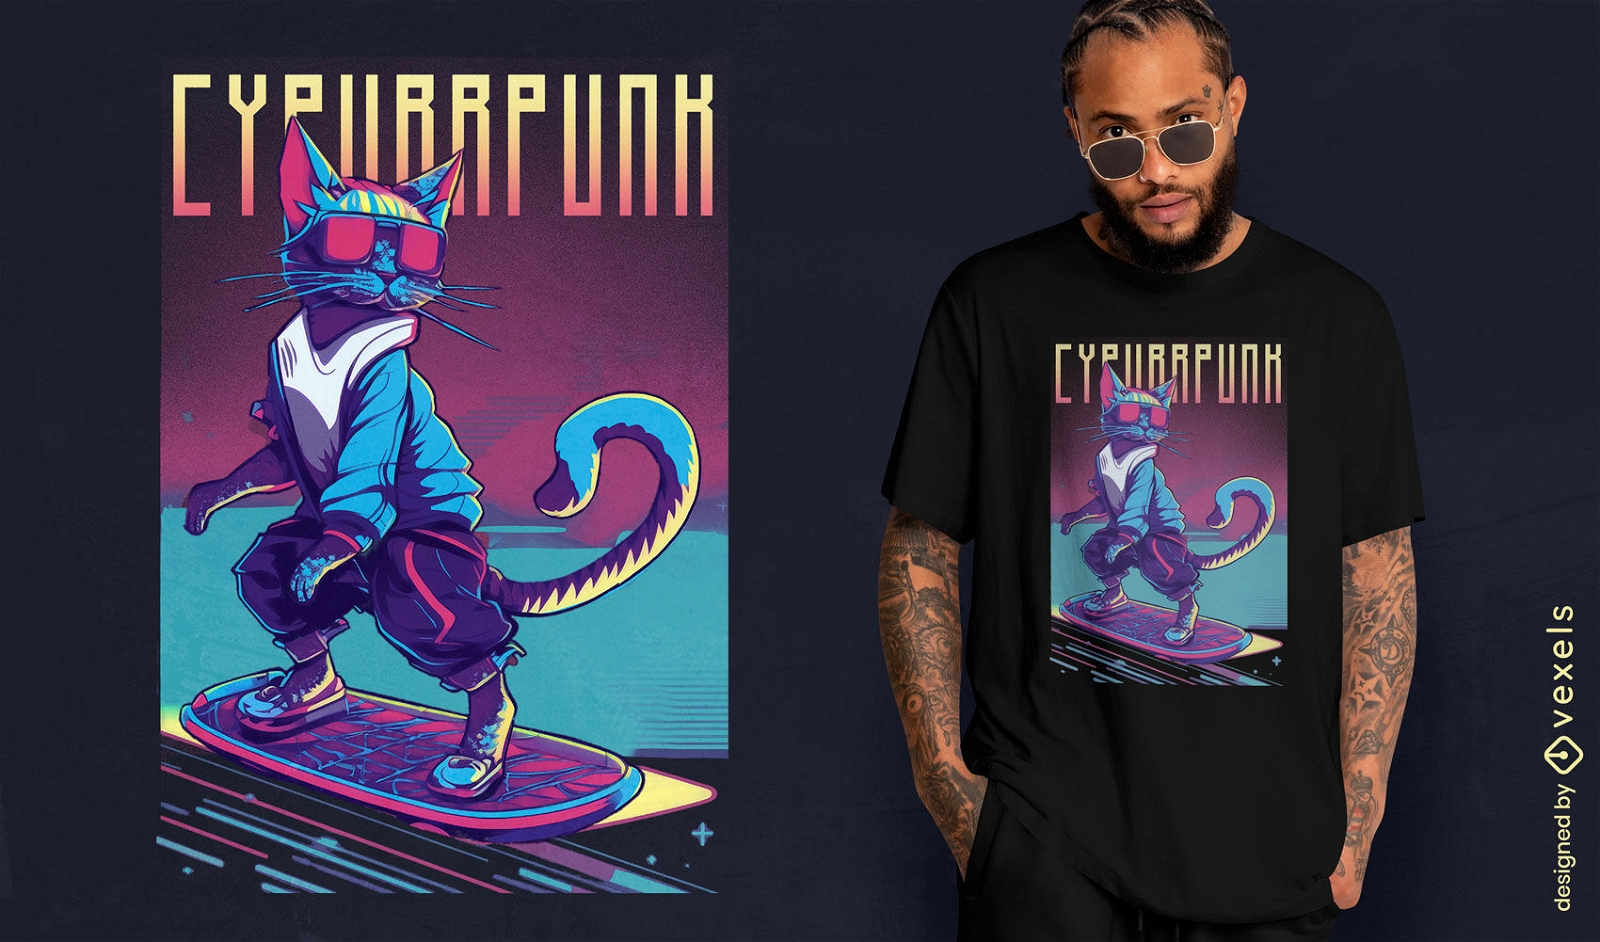 Cyberpunk-Skater-Katzen-T-Shirt-Design